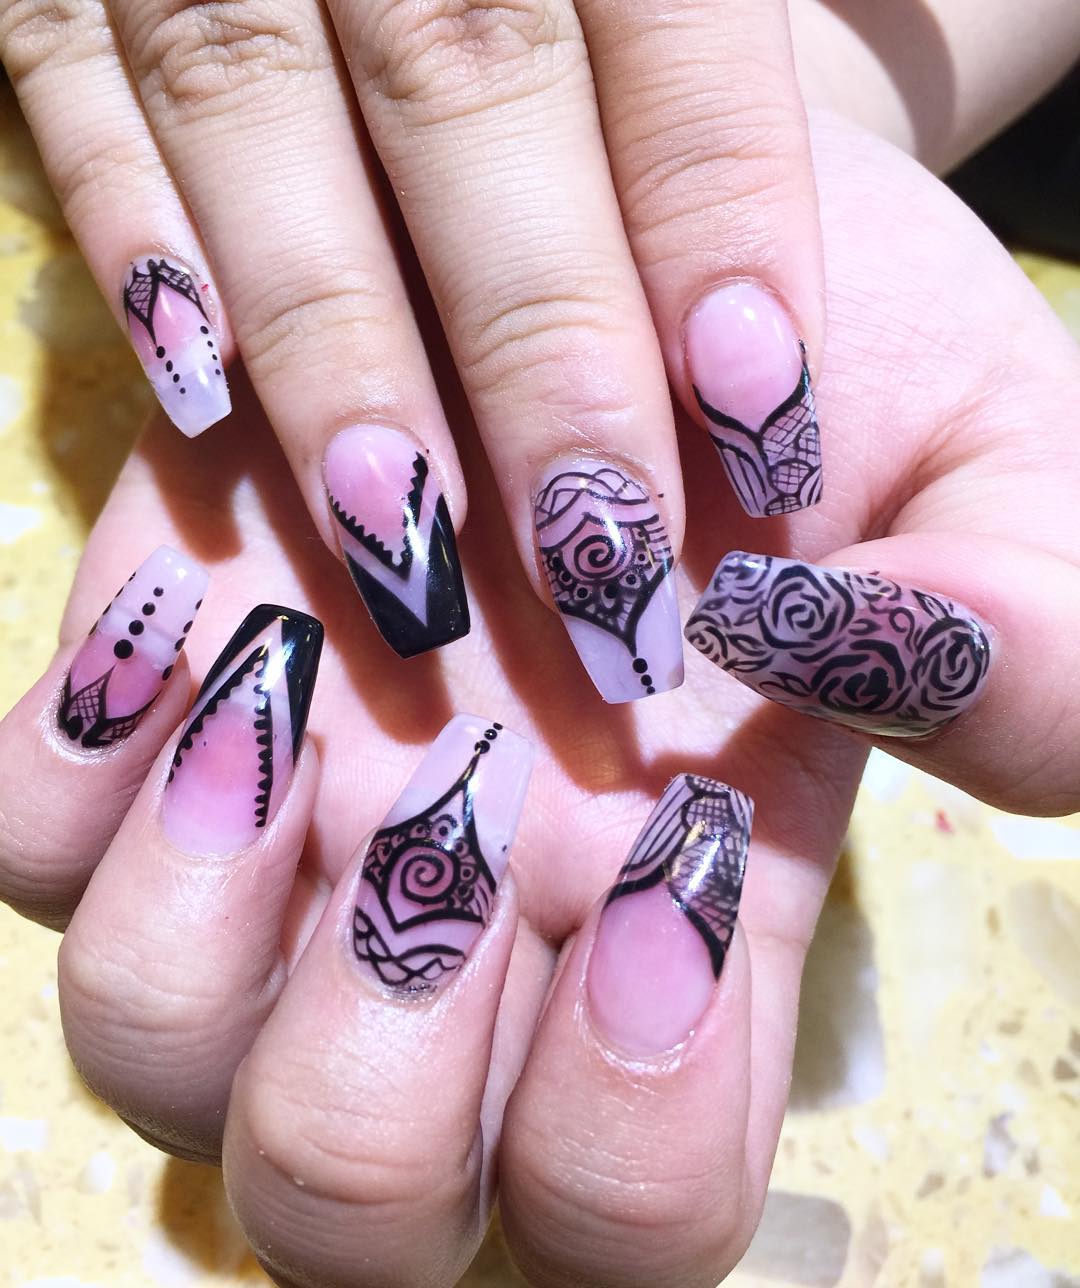 designed rose nails